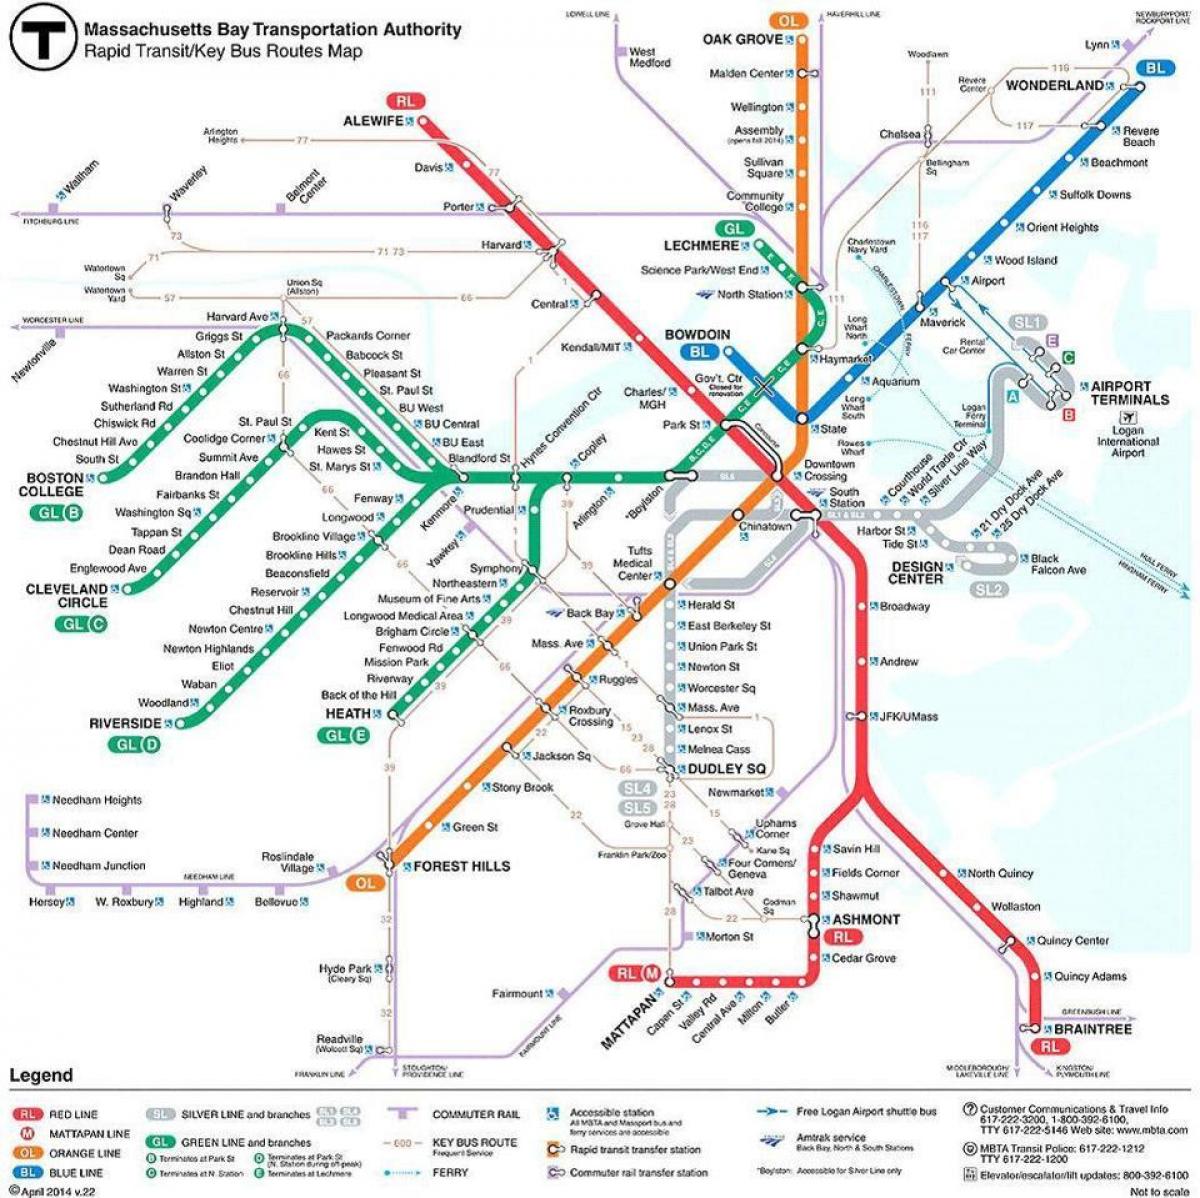 zemljevid MBTA